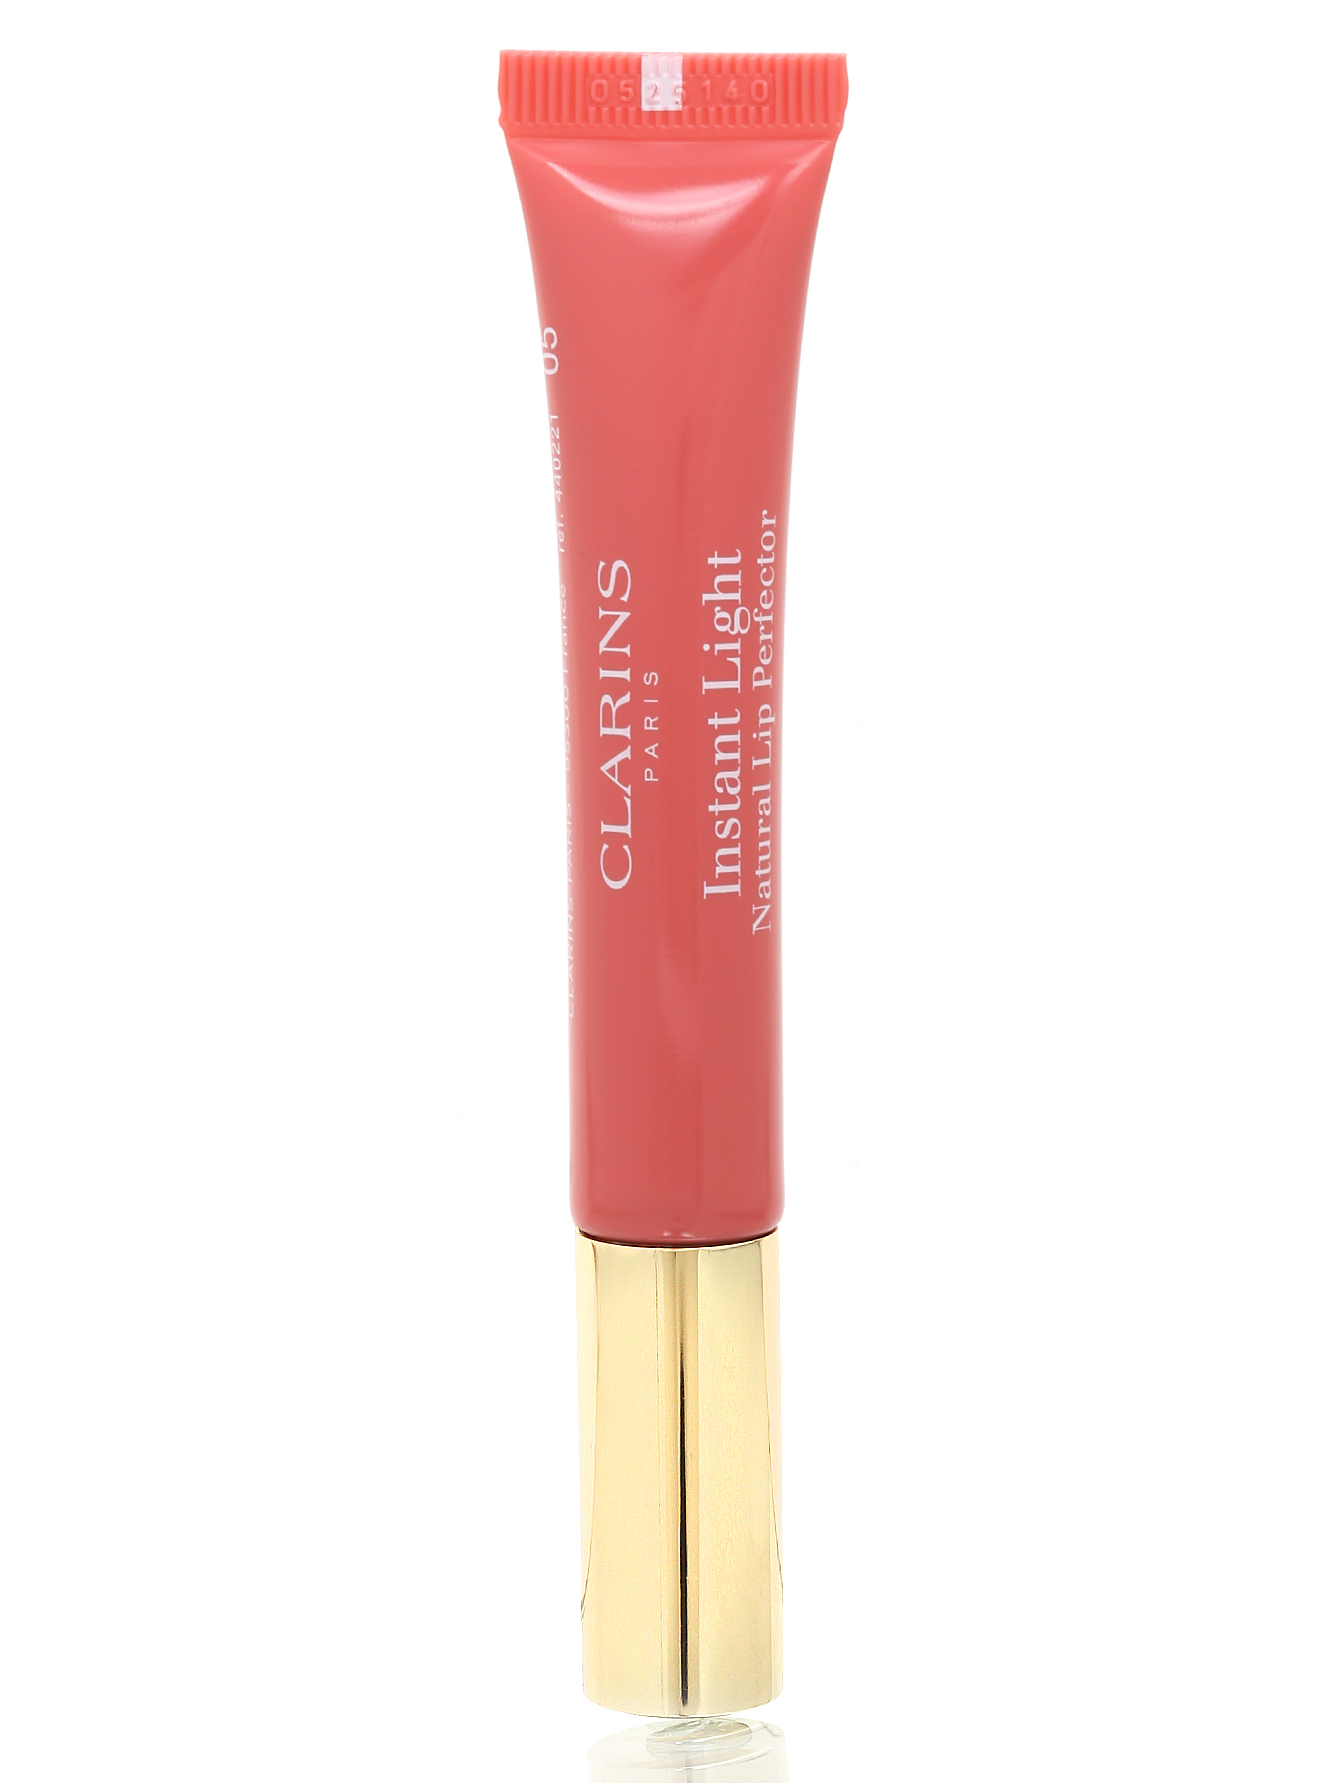 Блеск для губ - №05 Candy shimmer, Lip Liner - Общий вид